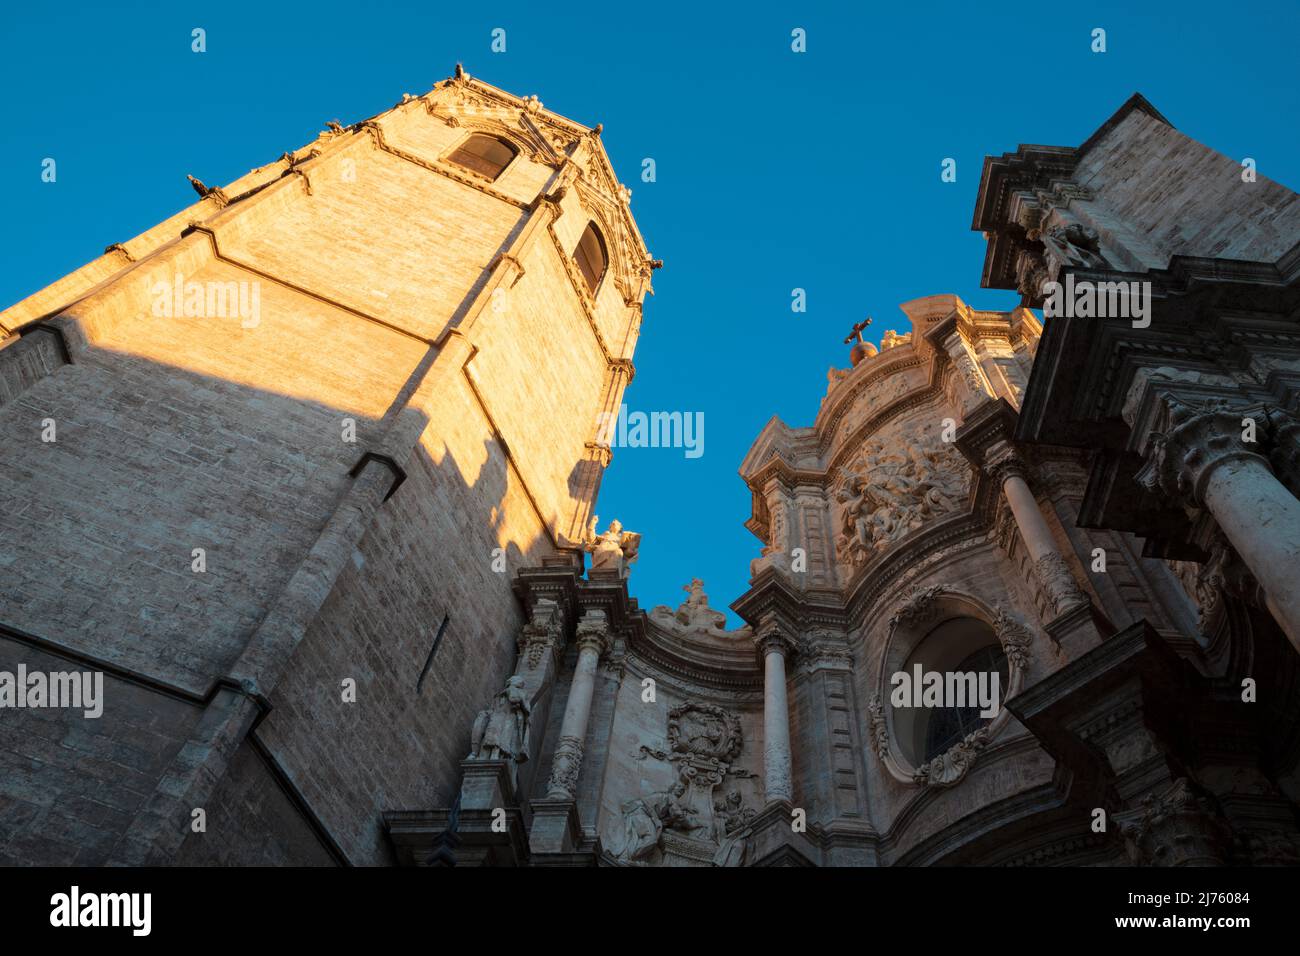 Valencia - das barocke Portal der Kathedrale - Basilika der Himmelfahrt unserer Lieben Frau von Valencia entworfen vom Architekten Antoni Gilabert Fornes Stockfoto